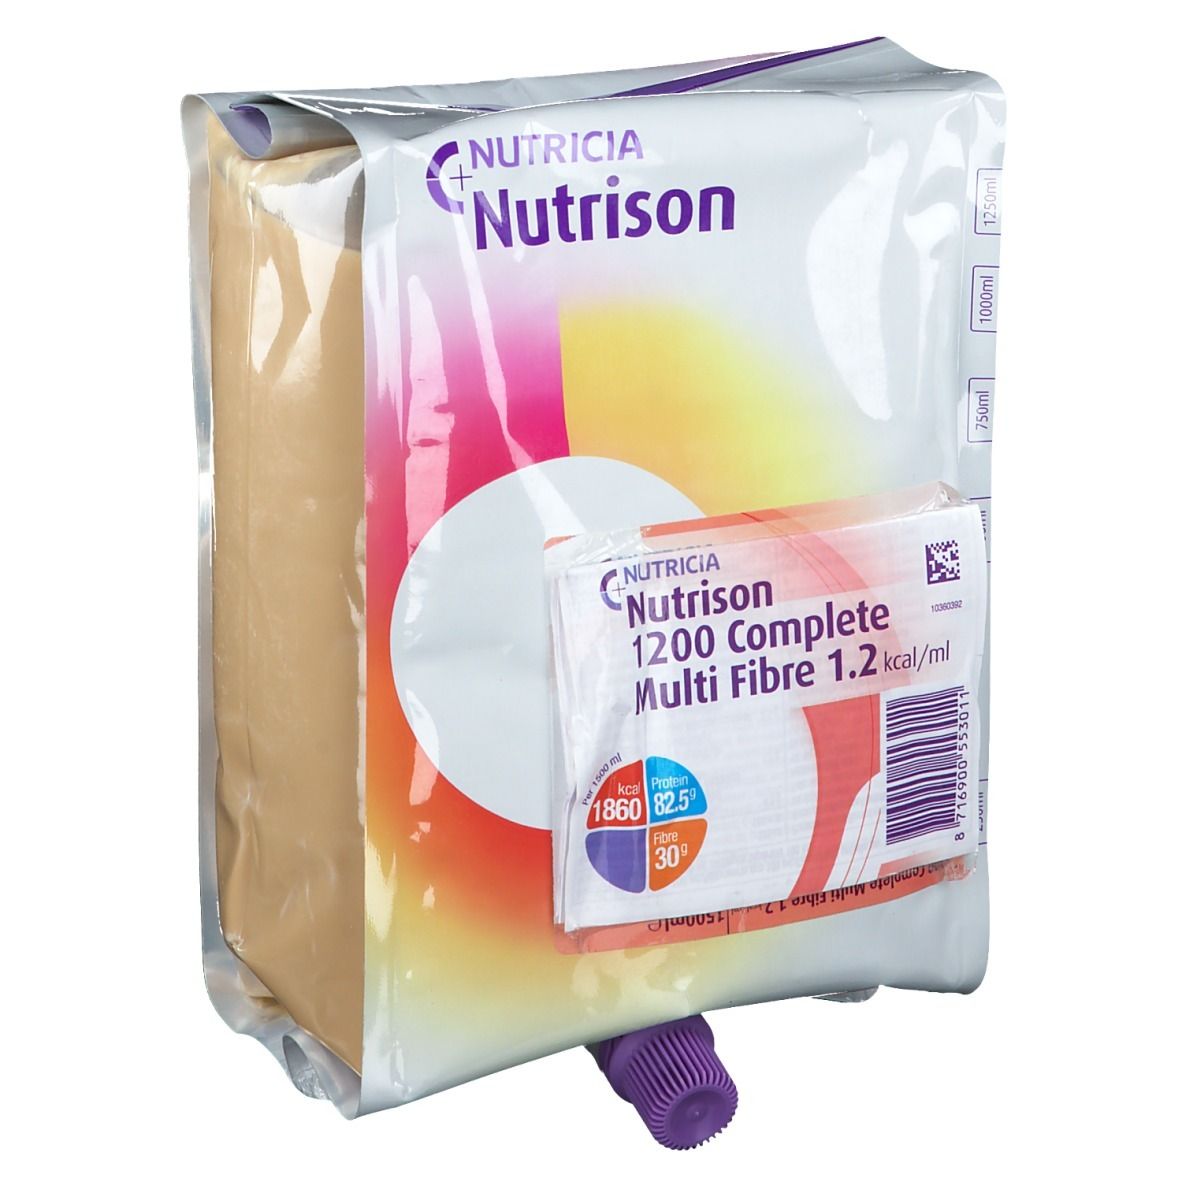 Nutricia Nutrison 1200 Complete Multi Fibre